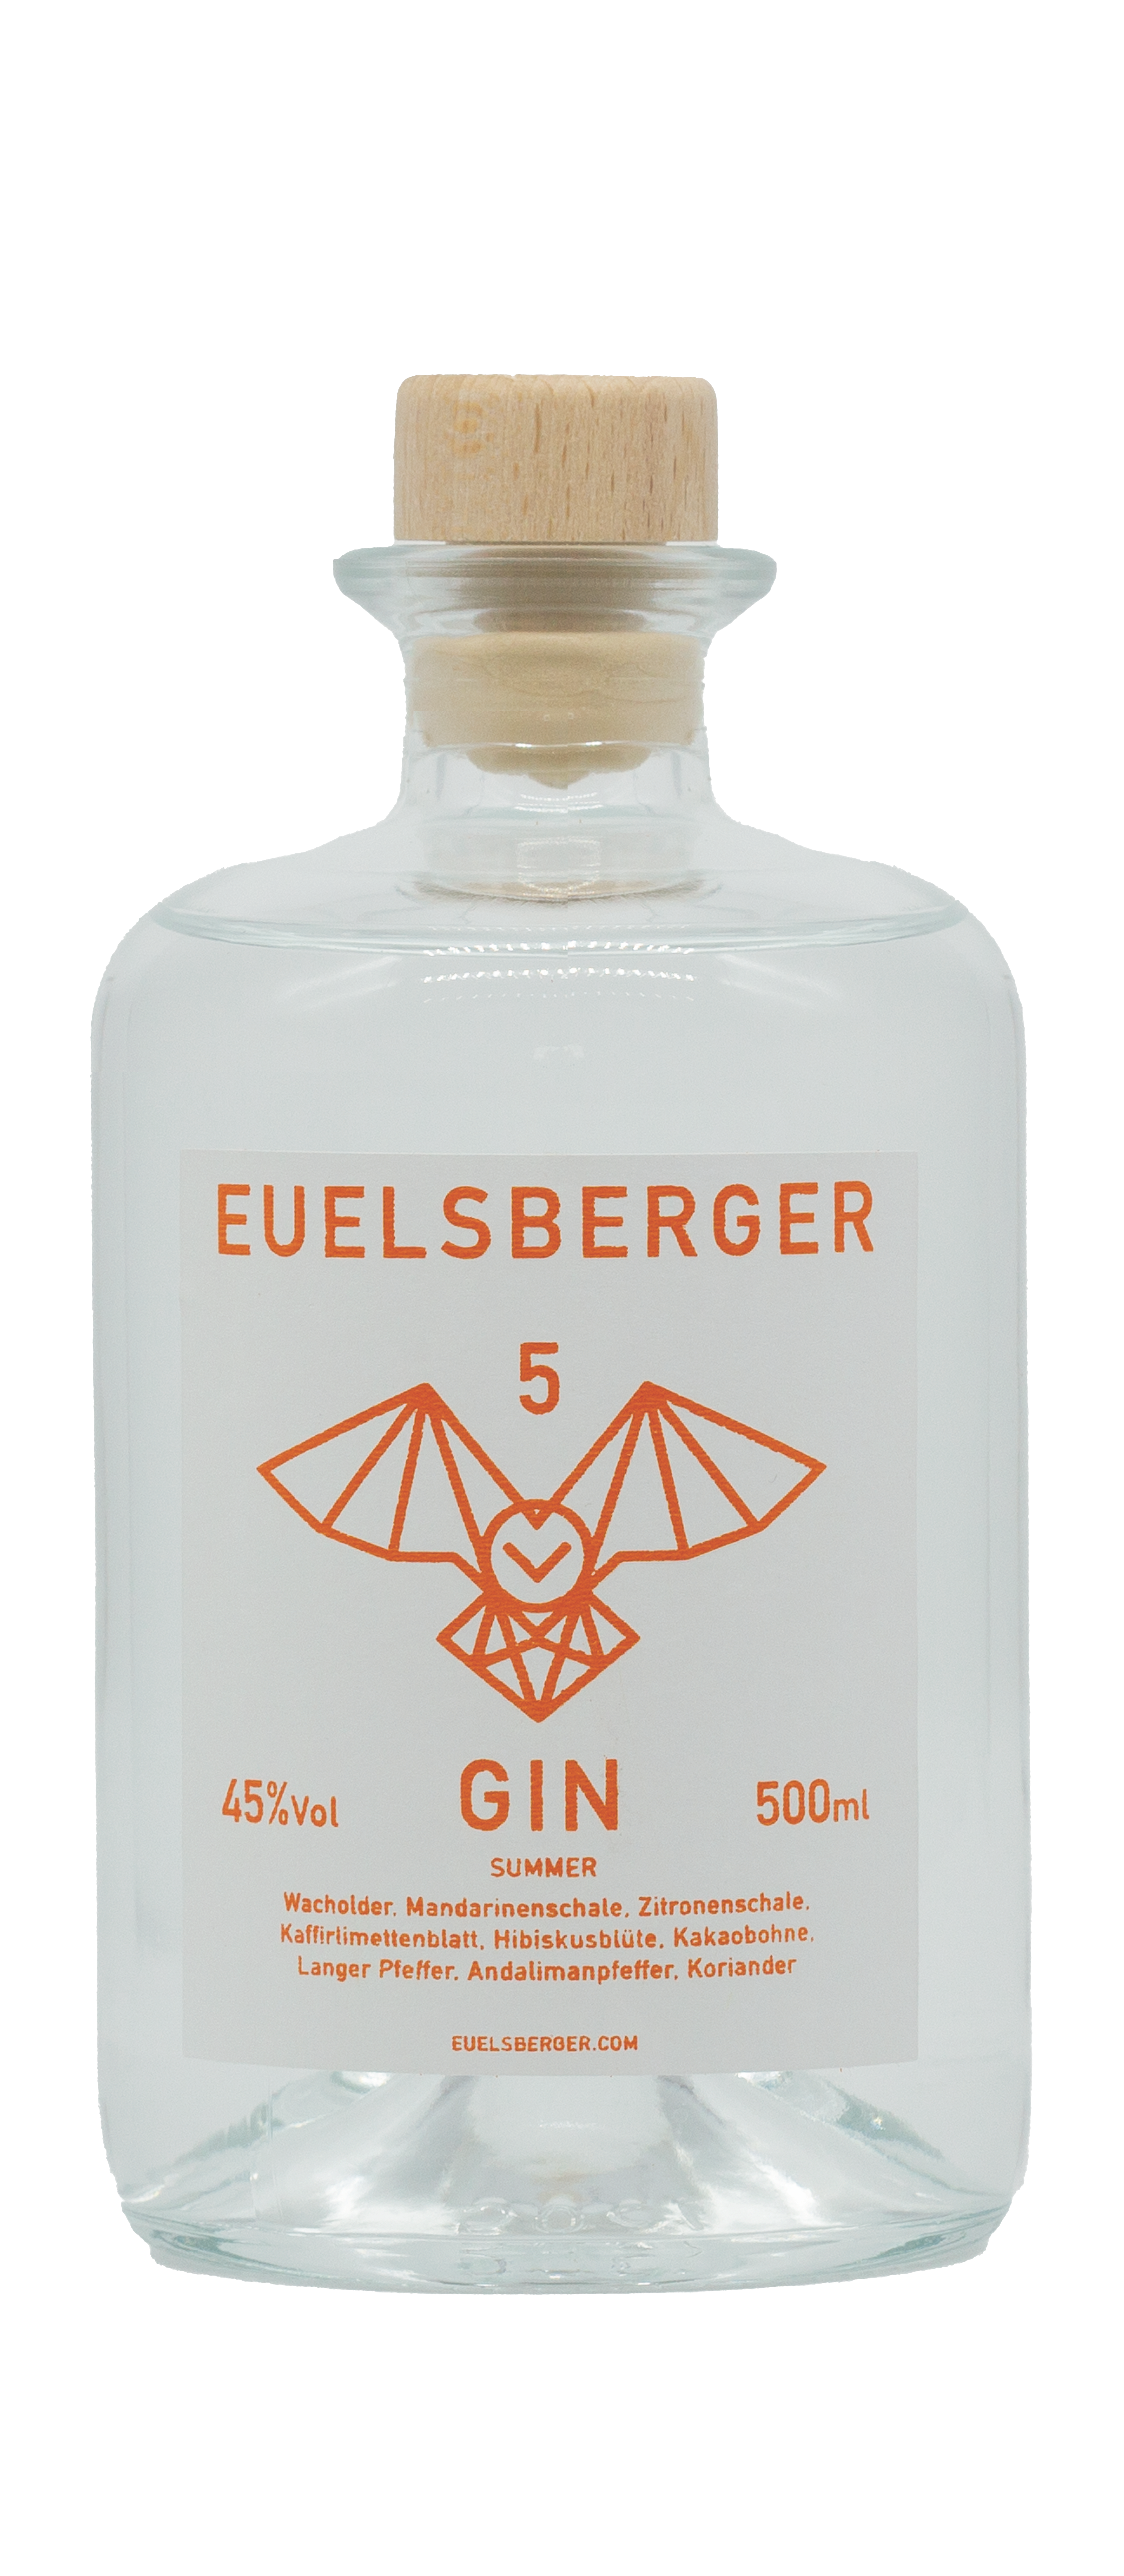 Euelsberger Gin Eifel Summer